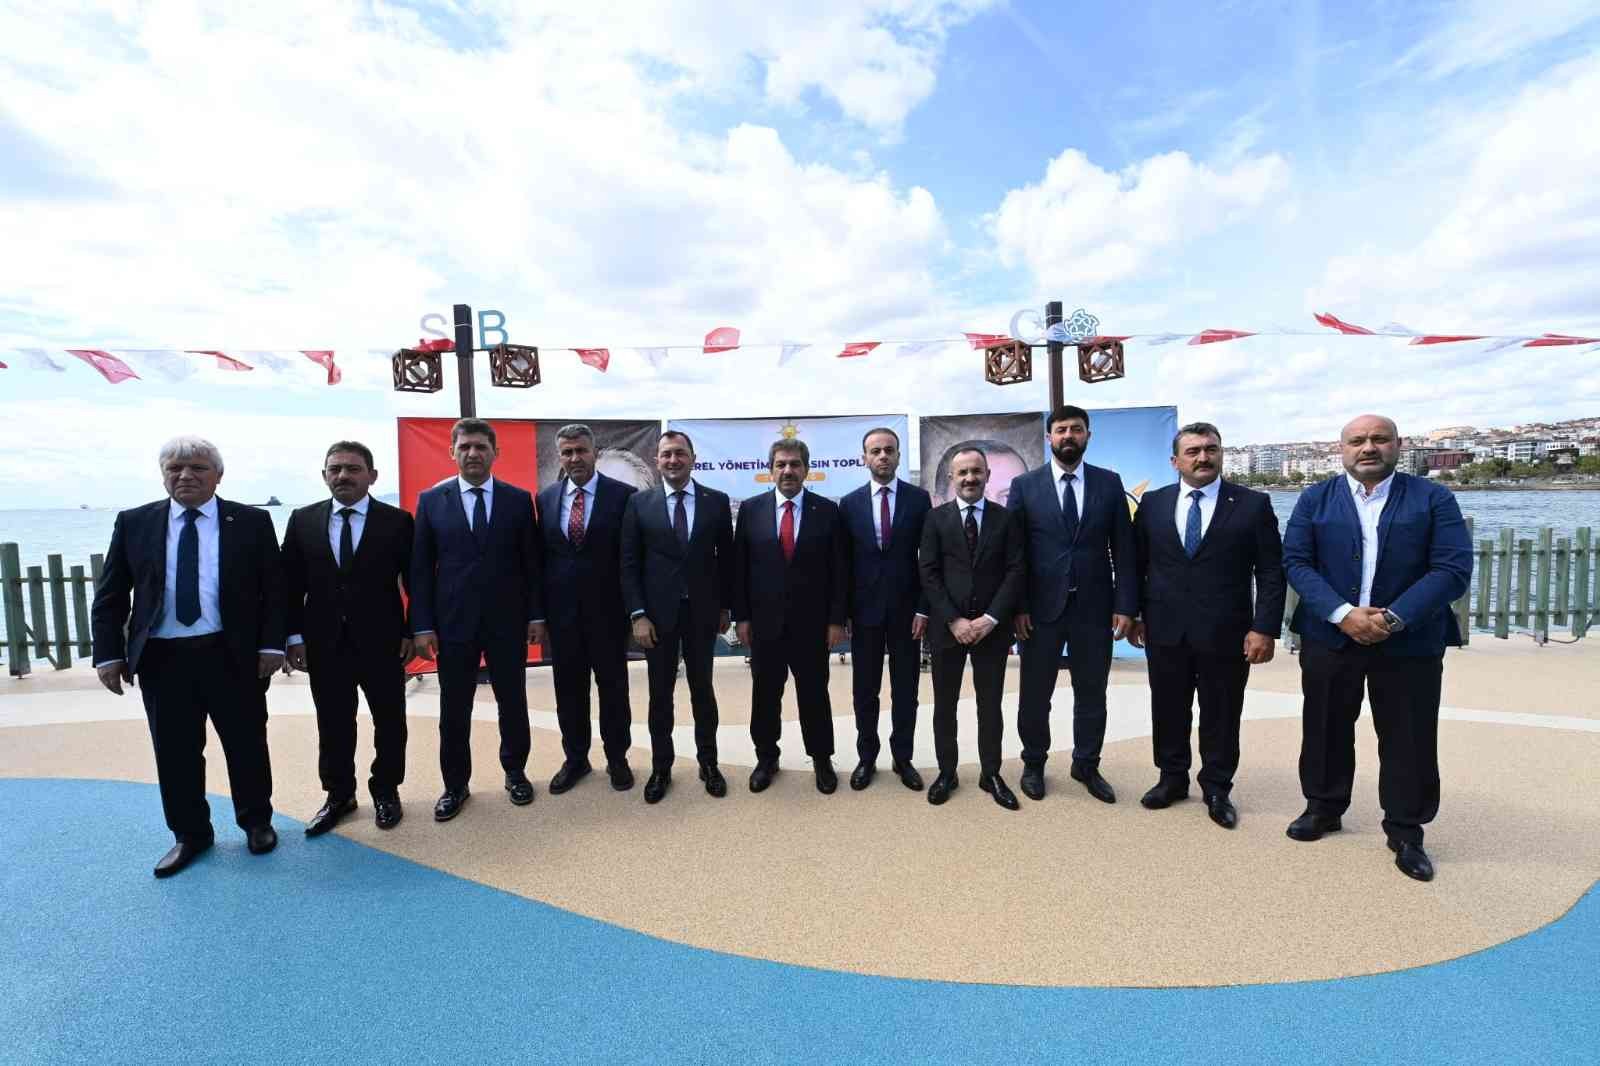 11 Ak Partili Grup Başkanvekillerinden 11 Chpli Büyükşehir Başkanlarına: “Acziyet Deklarasyonlarıyla Bahane Üretmeye Devam Etmektedir”